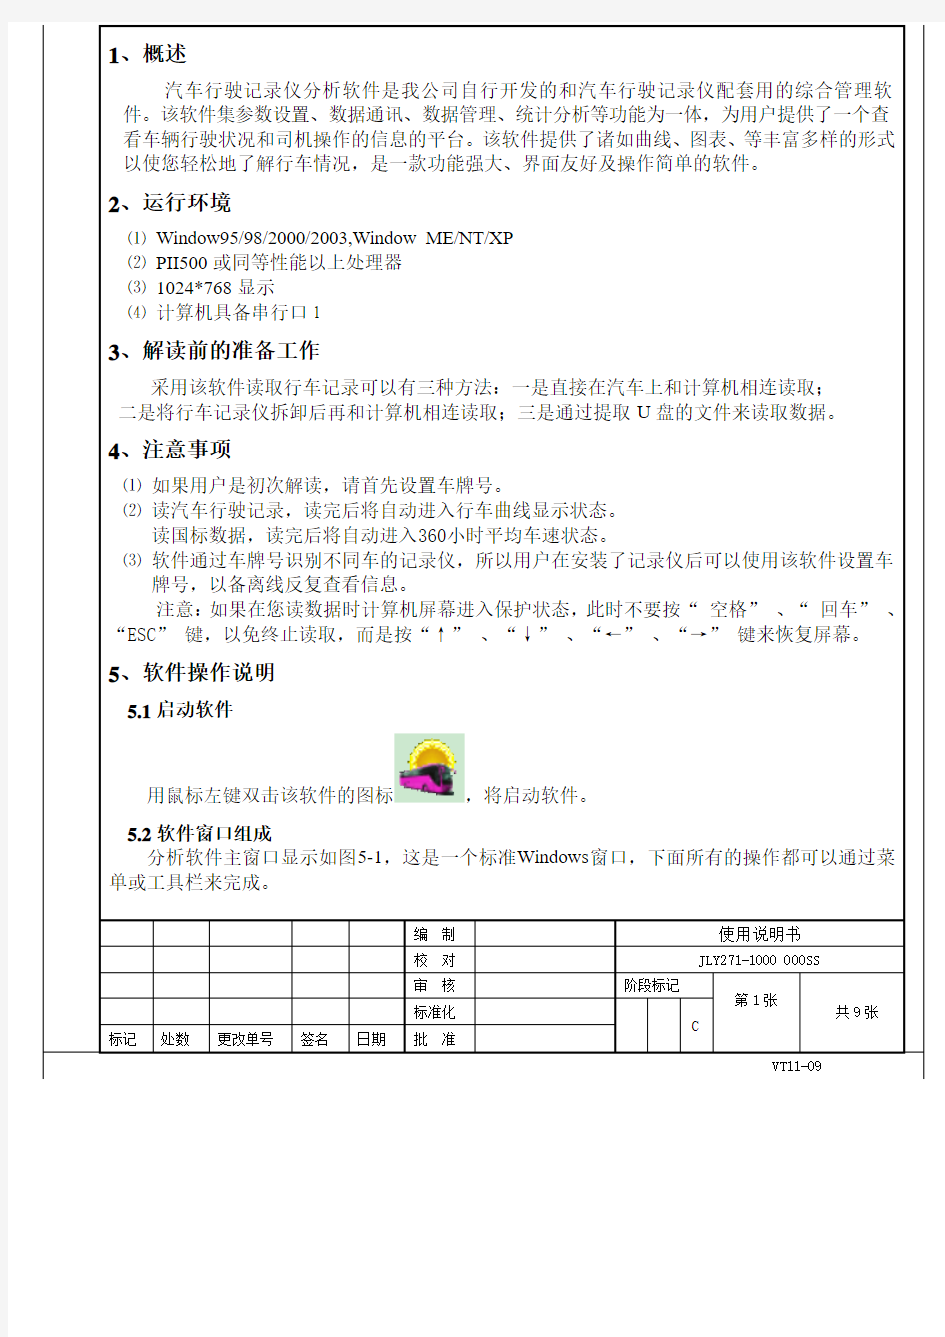 行车记录仪解析软件说明书(中文)